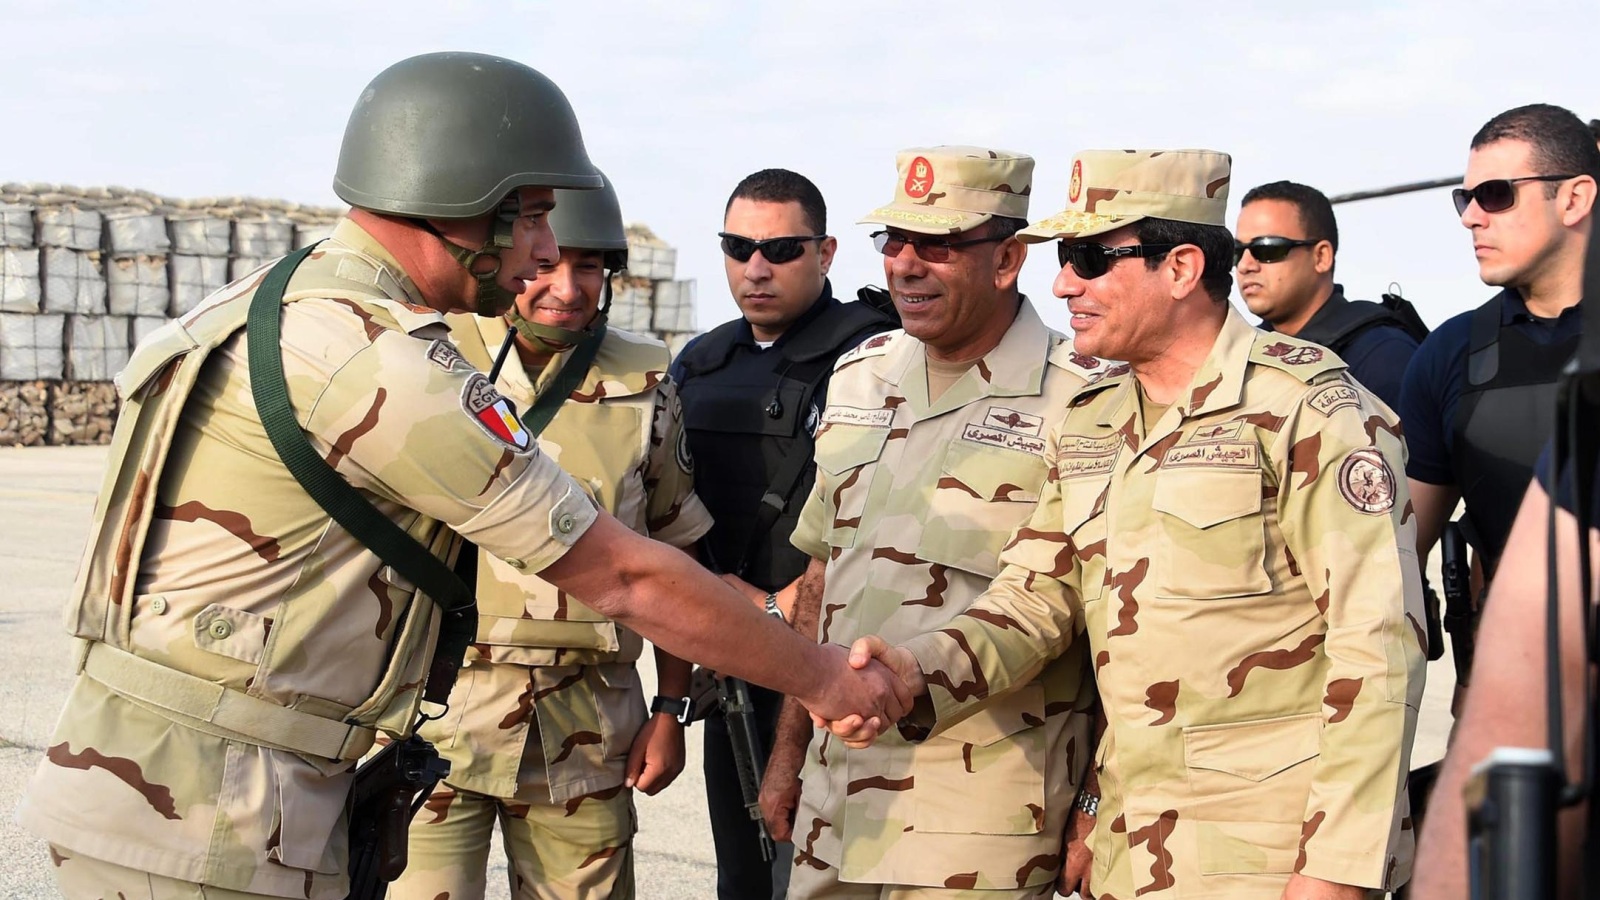 السيسي مرتديا الزي العسكري لحظة وصوله إلى سيناء لتفقد الجنود بزيارة غير معلنة (الأوروبية)